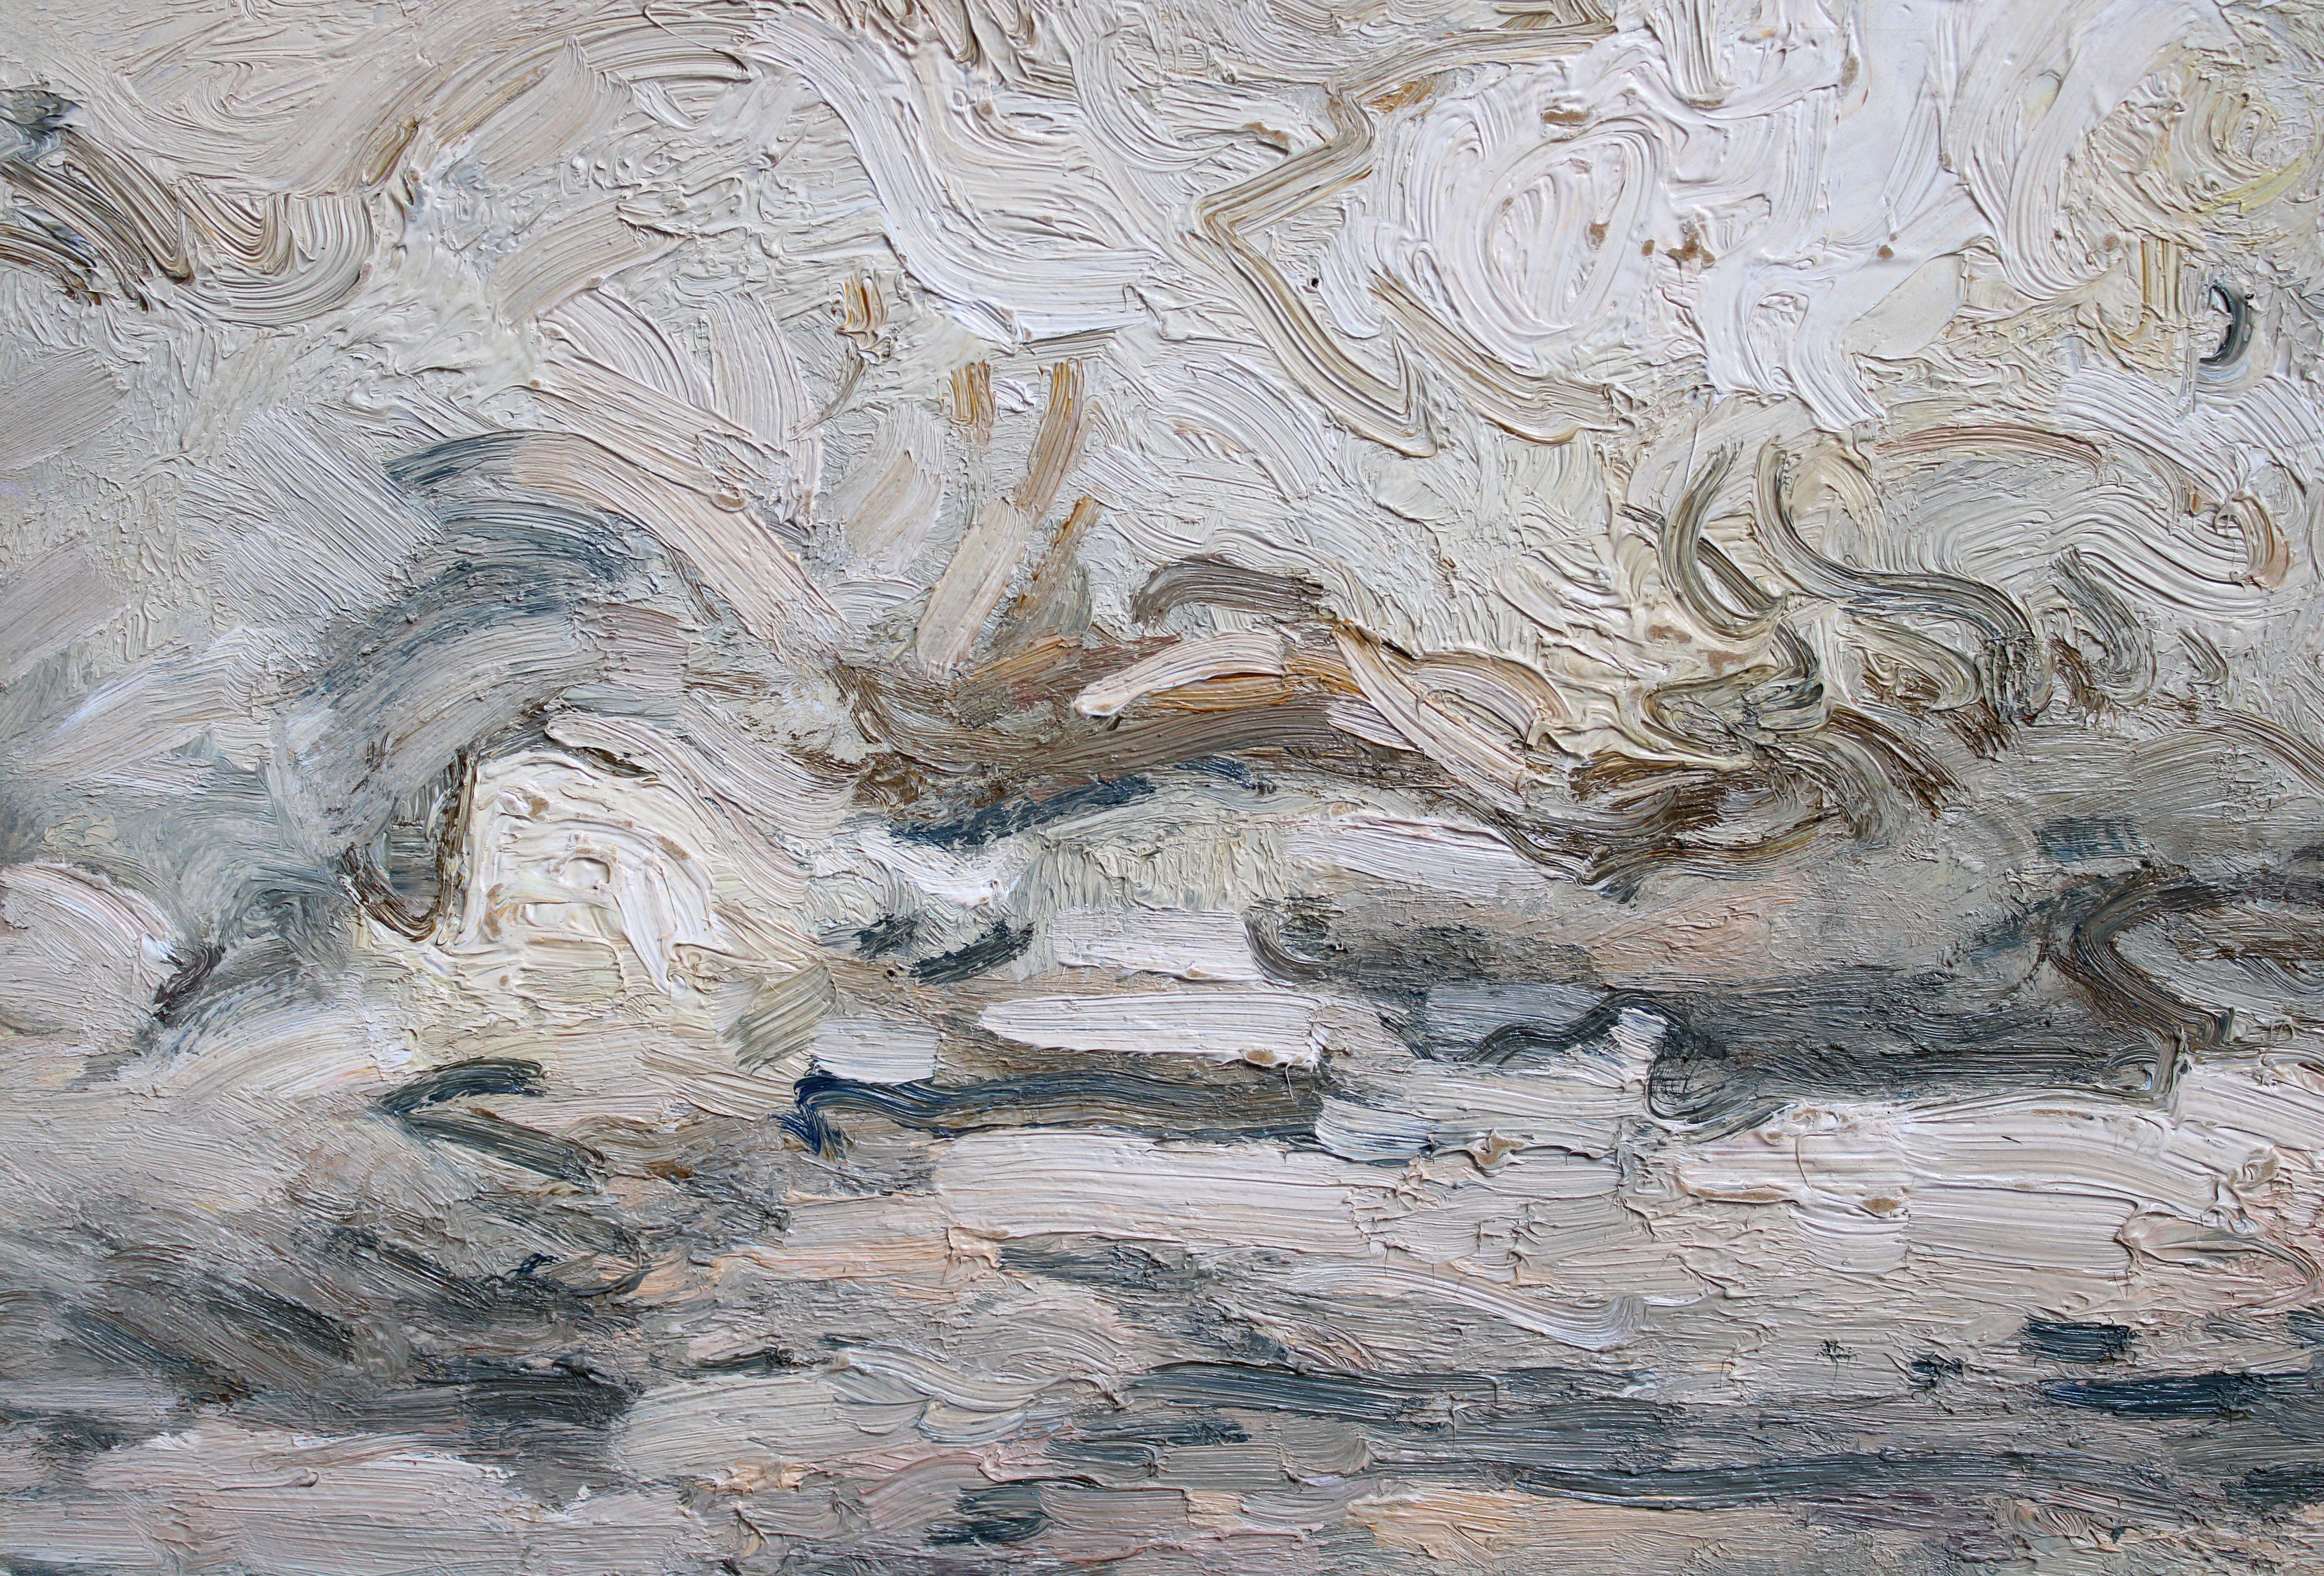 Nuages au-dessus de la mer, 1974, carton, huile, 36,5 x49 cm - Painting de Julijs Vilumainis